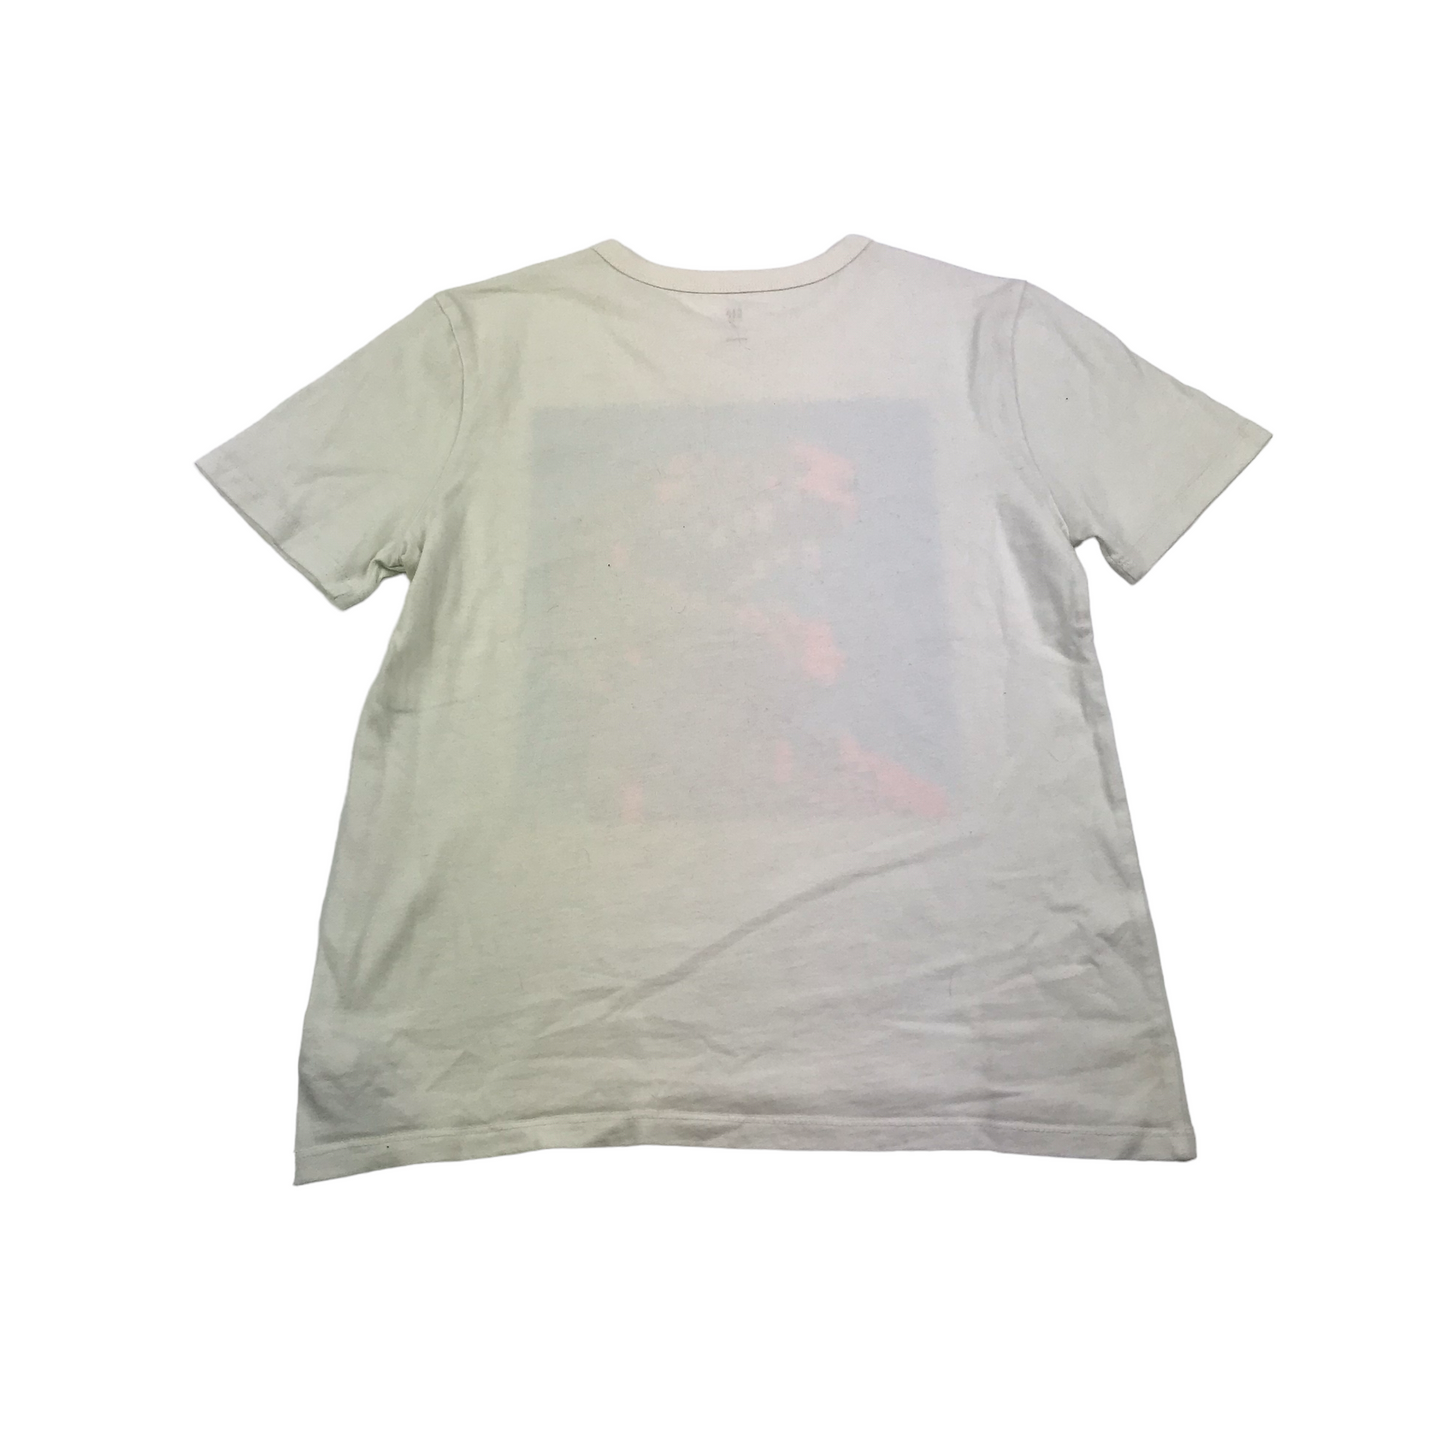 Gap Natural White Pixel Dinosaur T-shirt Age 10